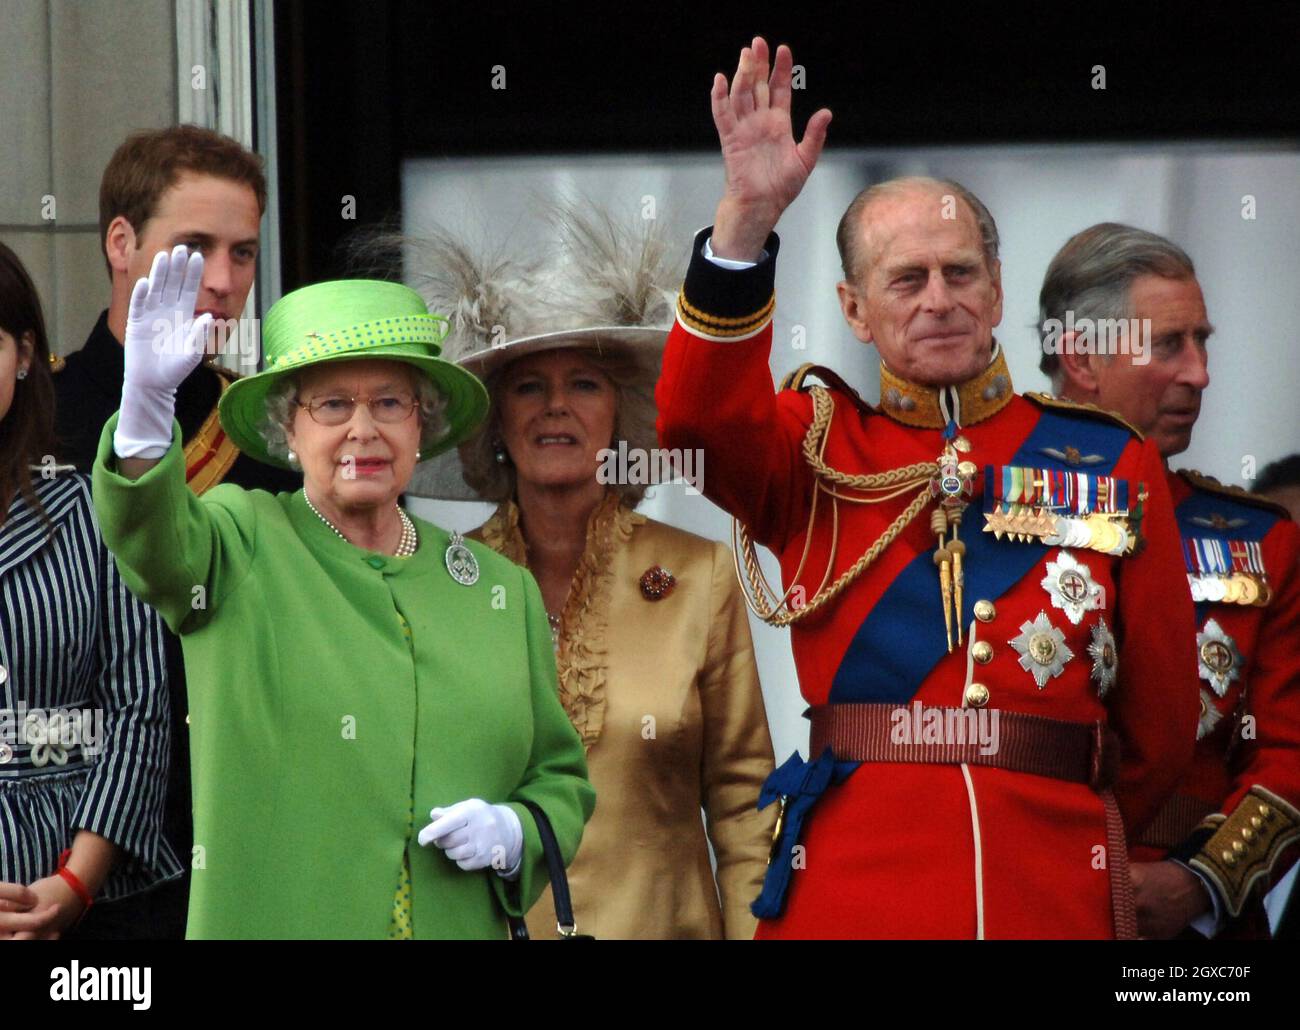 Prince William, Reine Elizabeth ll, Camilla, duchesse de Cornwall, Prince Philip,Duc d'Édimbourg et Prince Charles, prince de Galles, se tiennent sur le balcon de Buckingham Palace après la cérémonie de la Trooping de couleur à Londres. Banque D'Images